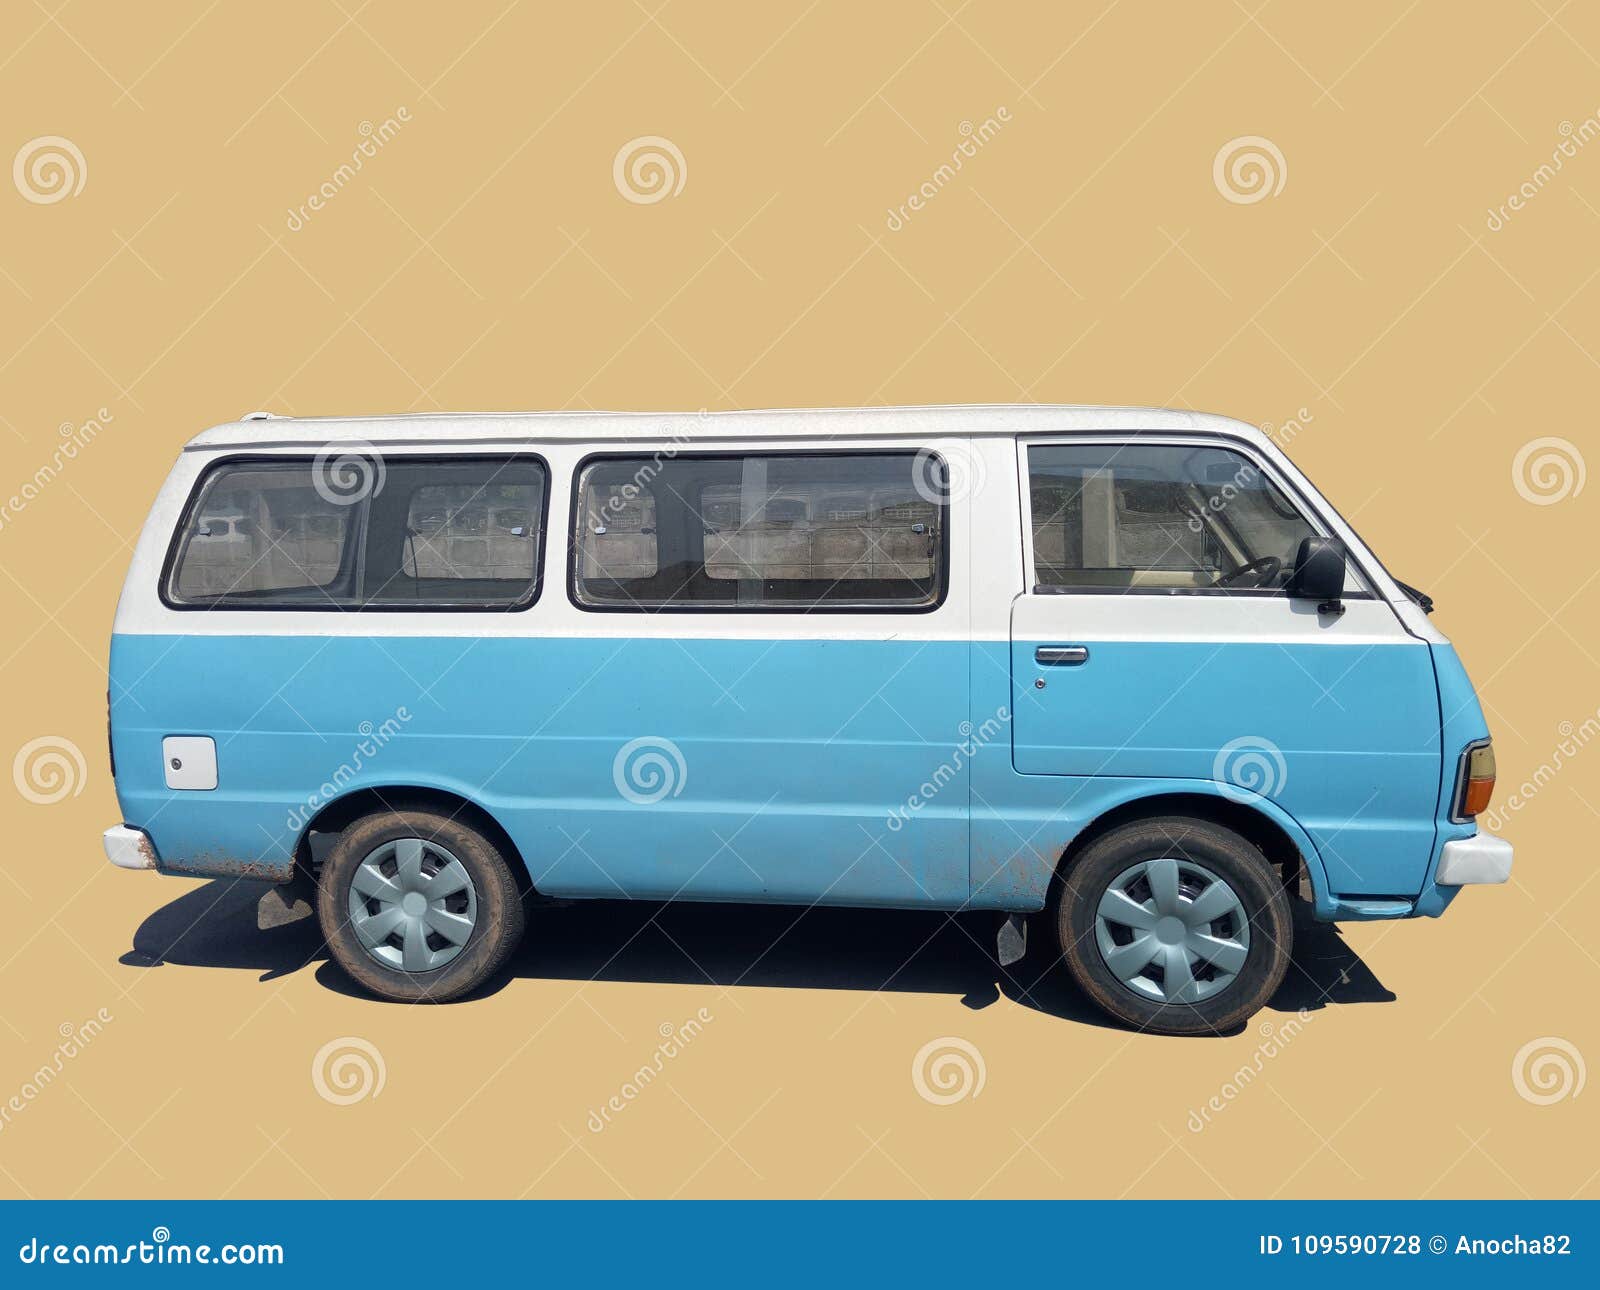 blue vans cars